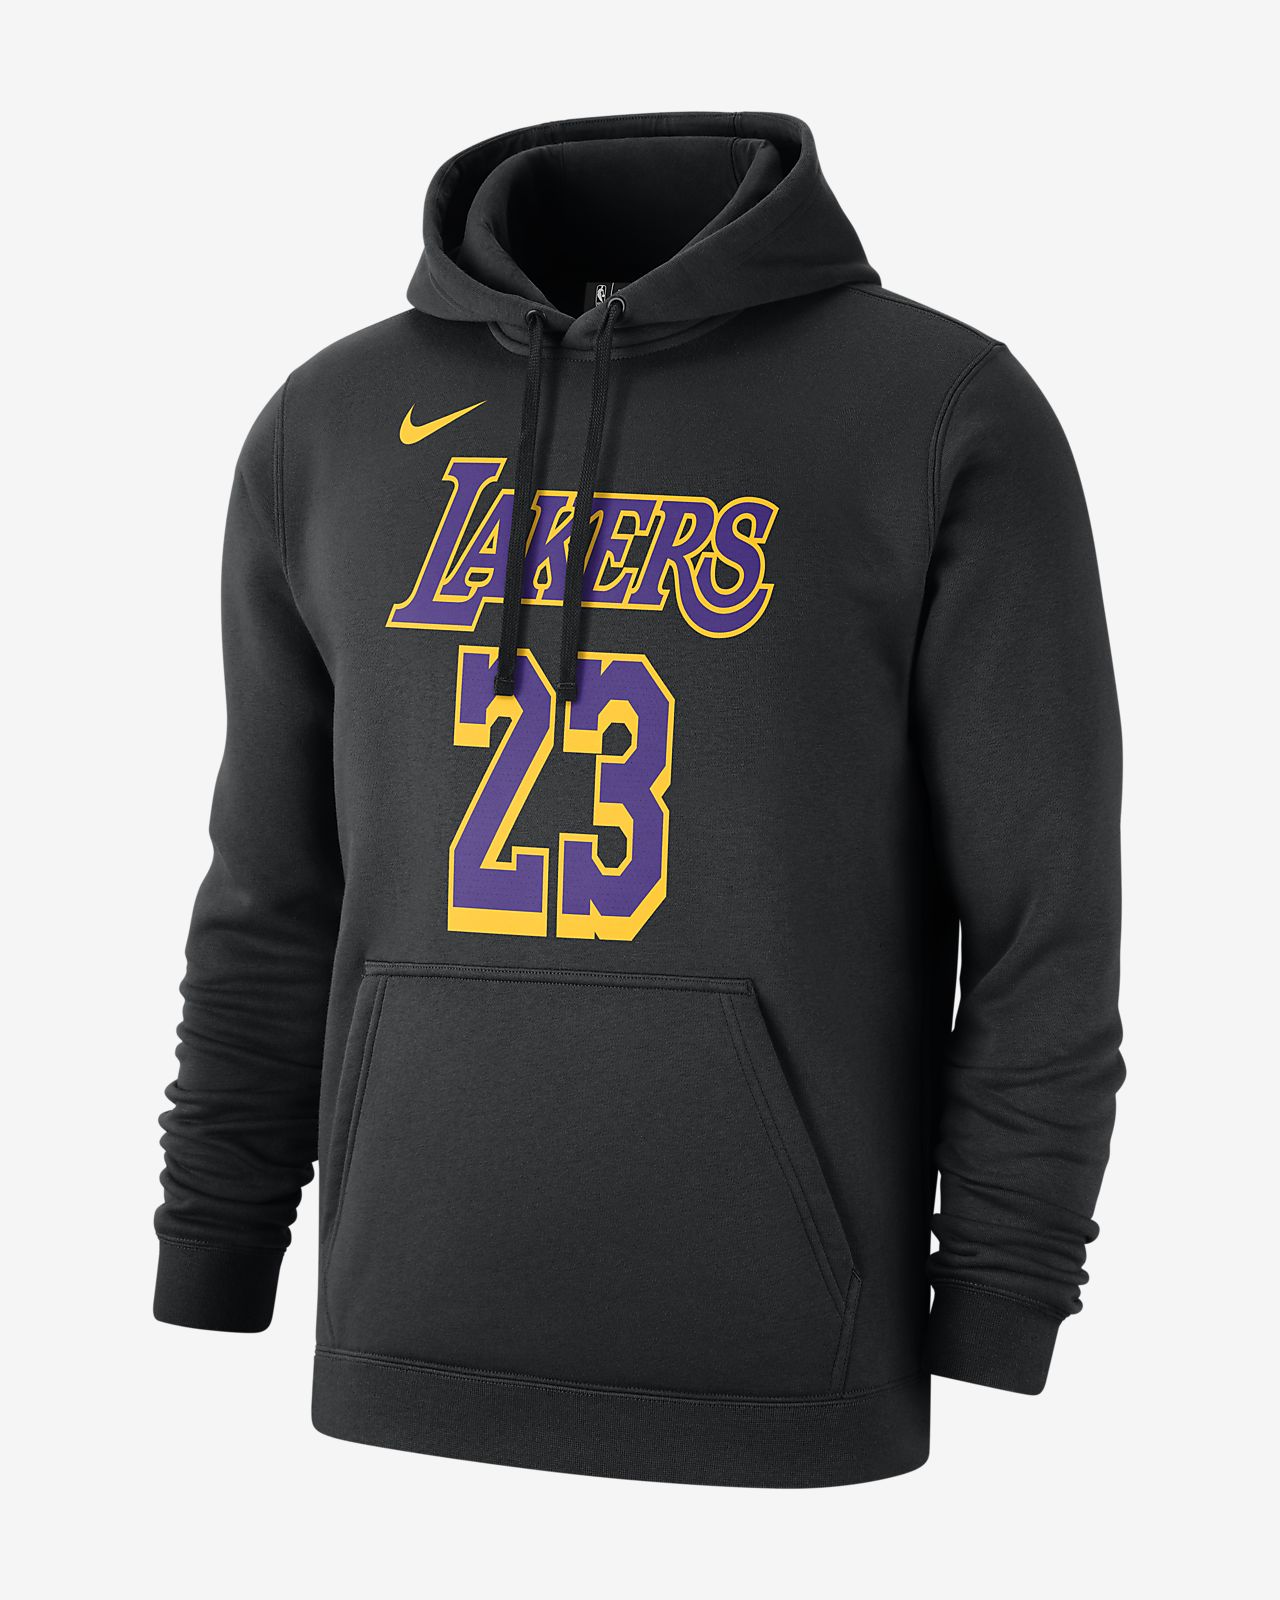 Buy > hoodie lebron james > in stock